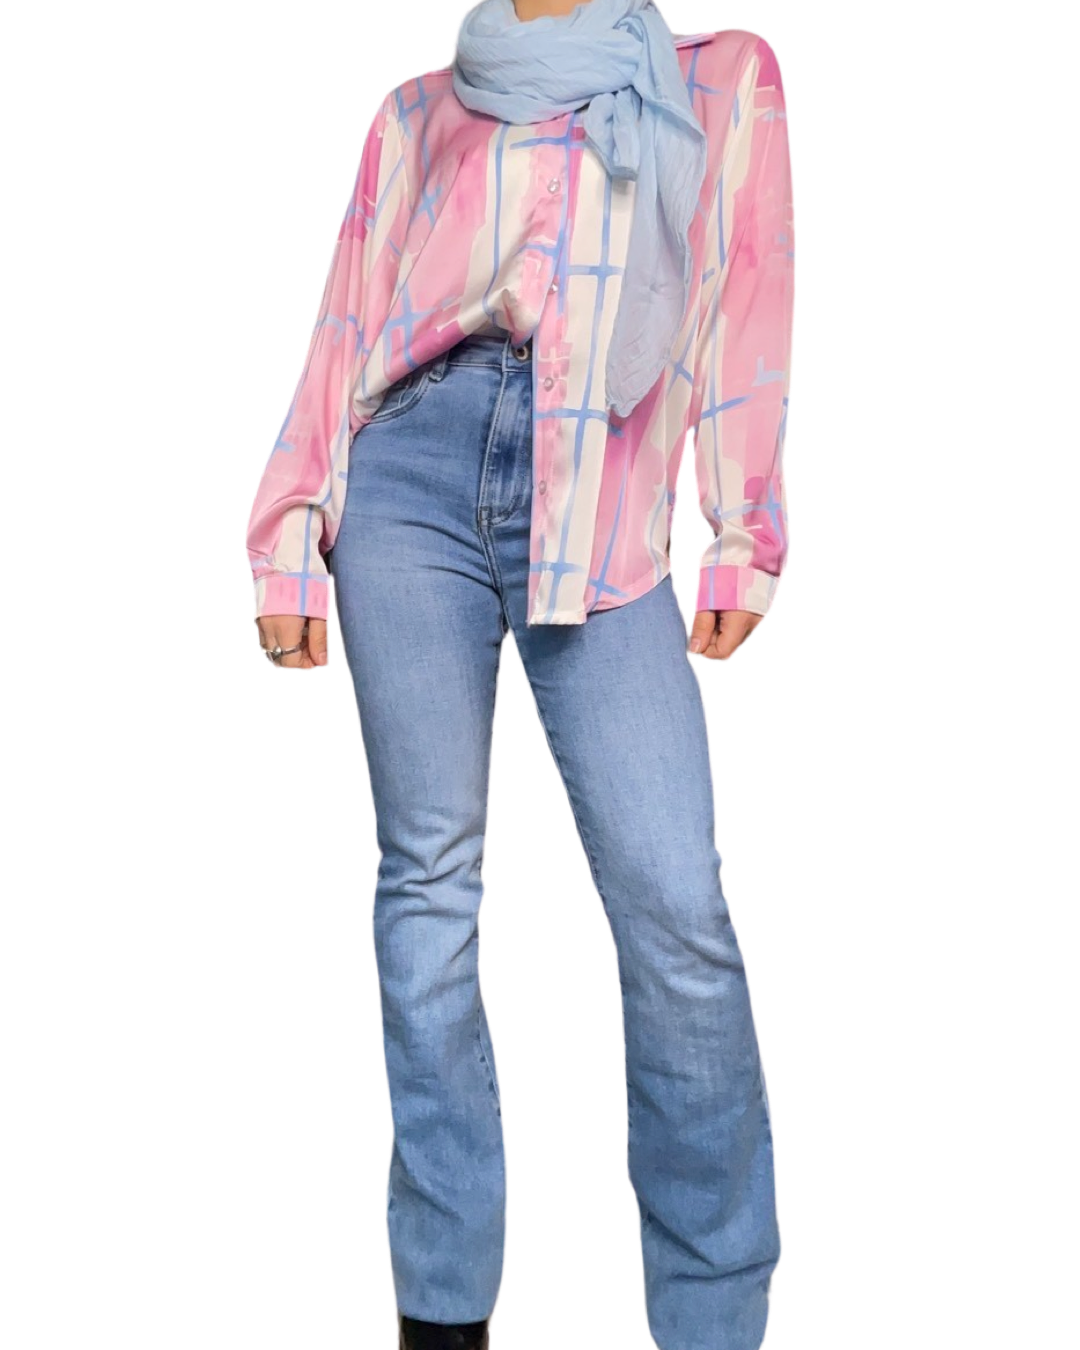 Foulard femme léger bleu ciel 20% soie avec chemise à carreaux abstraits et jeans flare clair